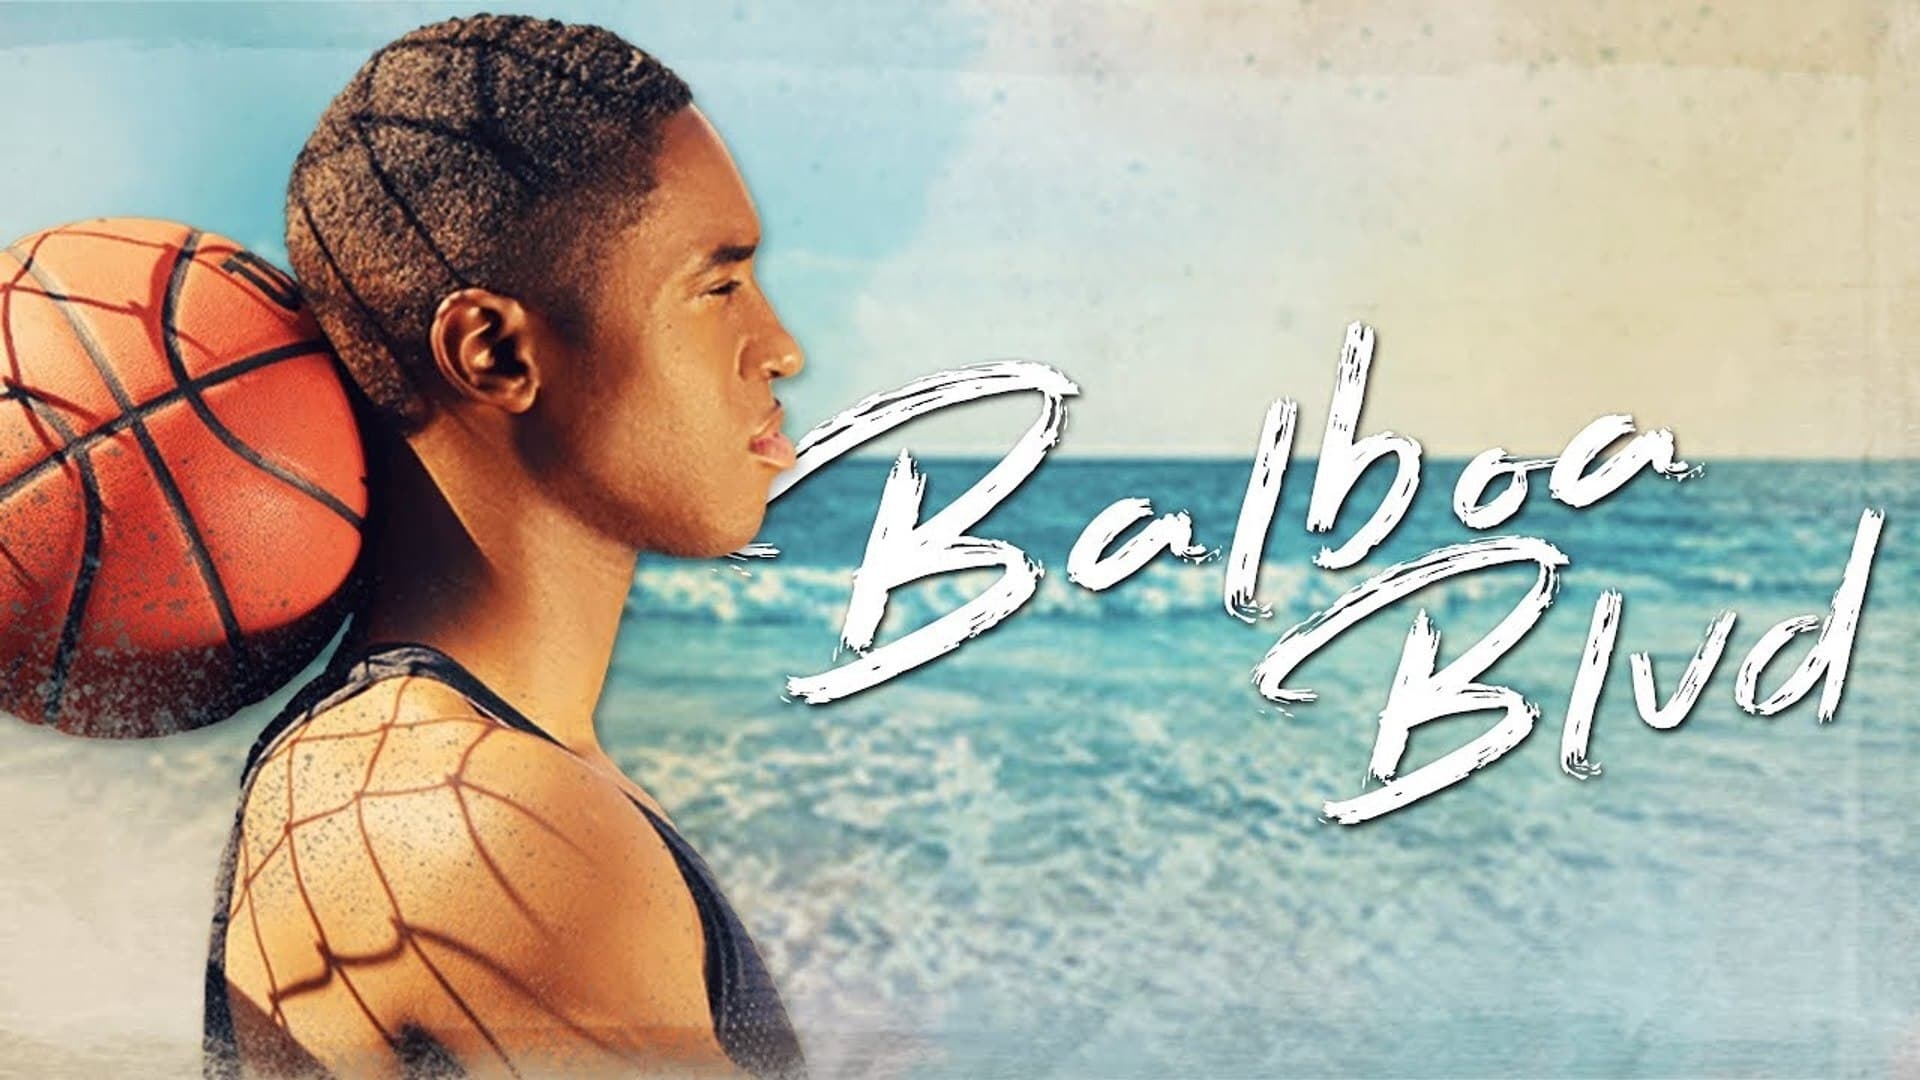 دانلود فیلم Balboa Blvd 2019